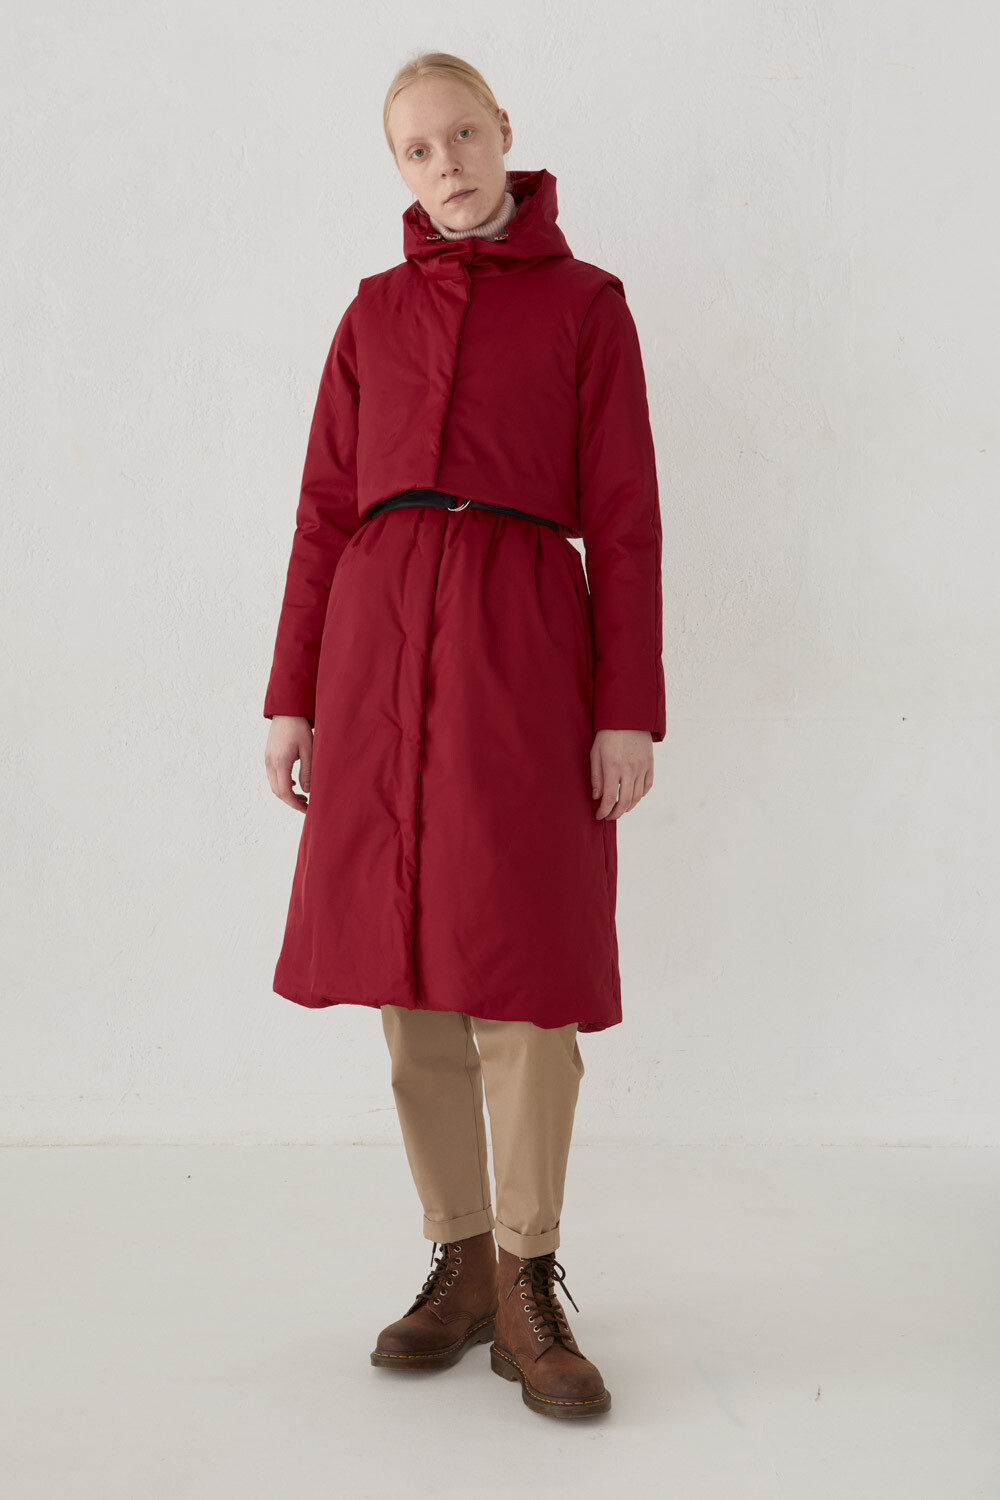 Утепленное пальто из мембраны красного цвета с жилетом